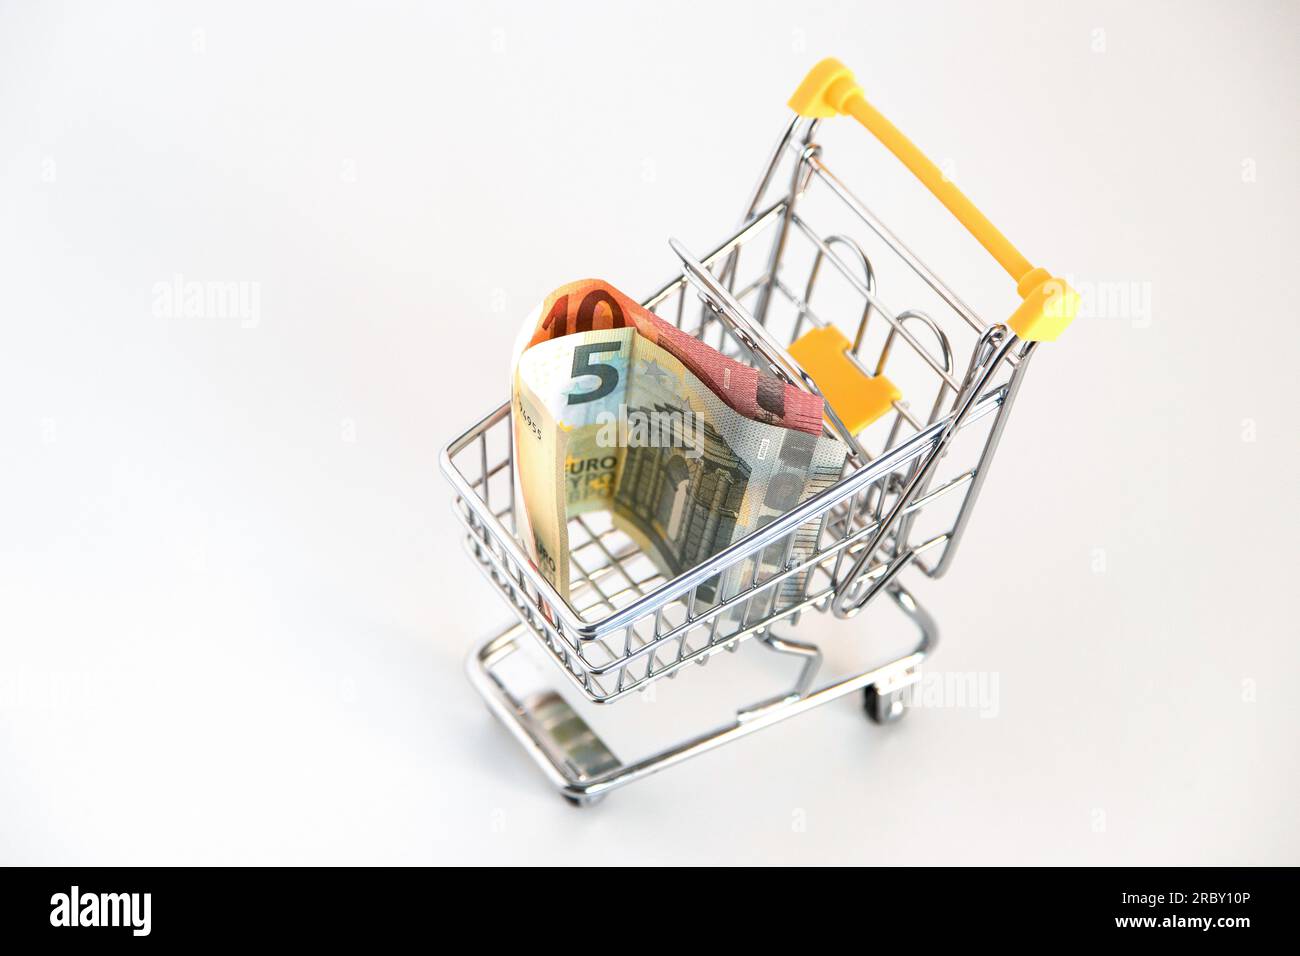 Carrello del supermercato con banconote in euro all'interno su sfondo bianco. Immagine concettuale del potere d'acquisto, delle spese familiari, dei beni essenziali. Foto Stock